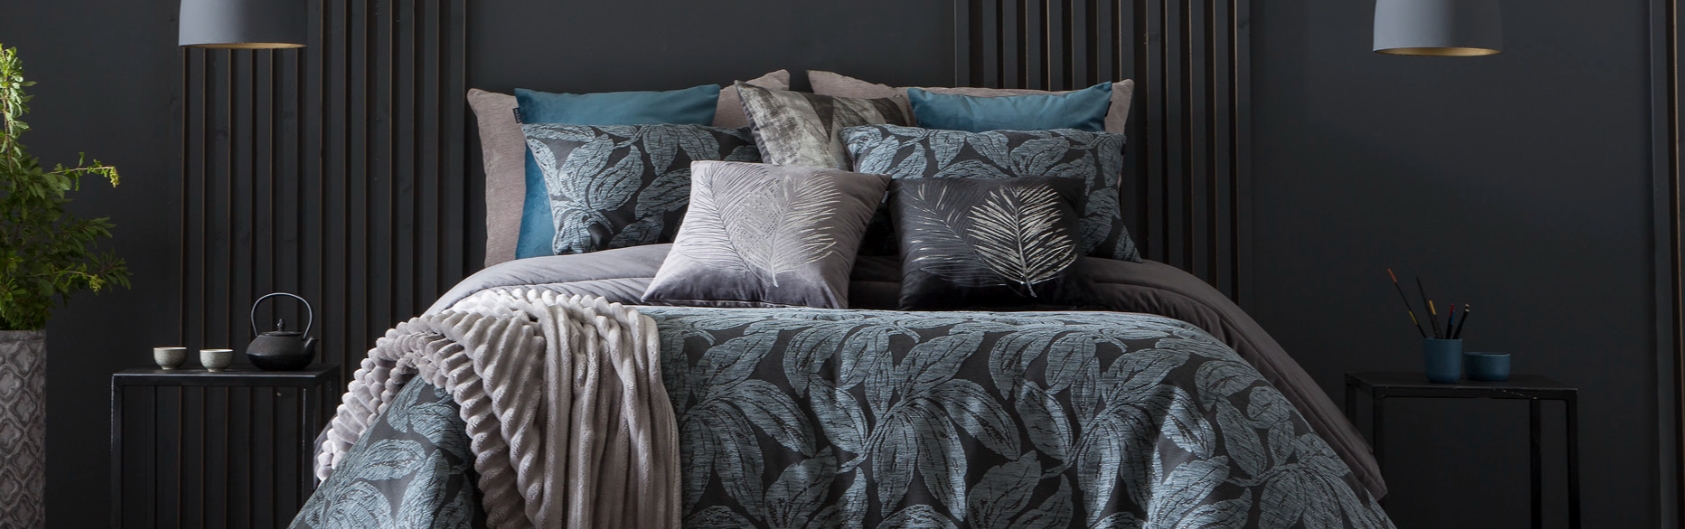 Marca Antilo: colchas de cama de alta calidad y diseño 1